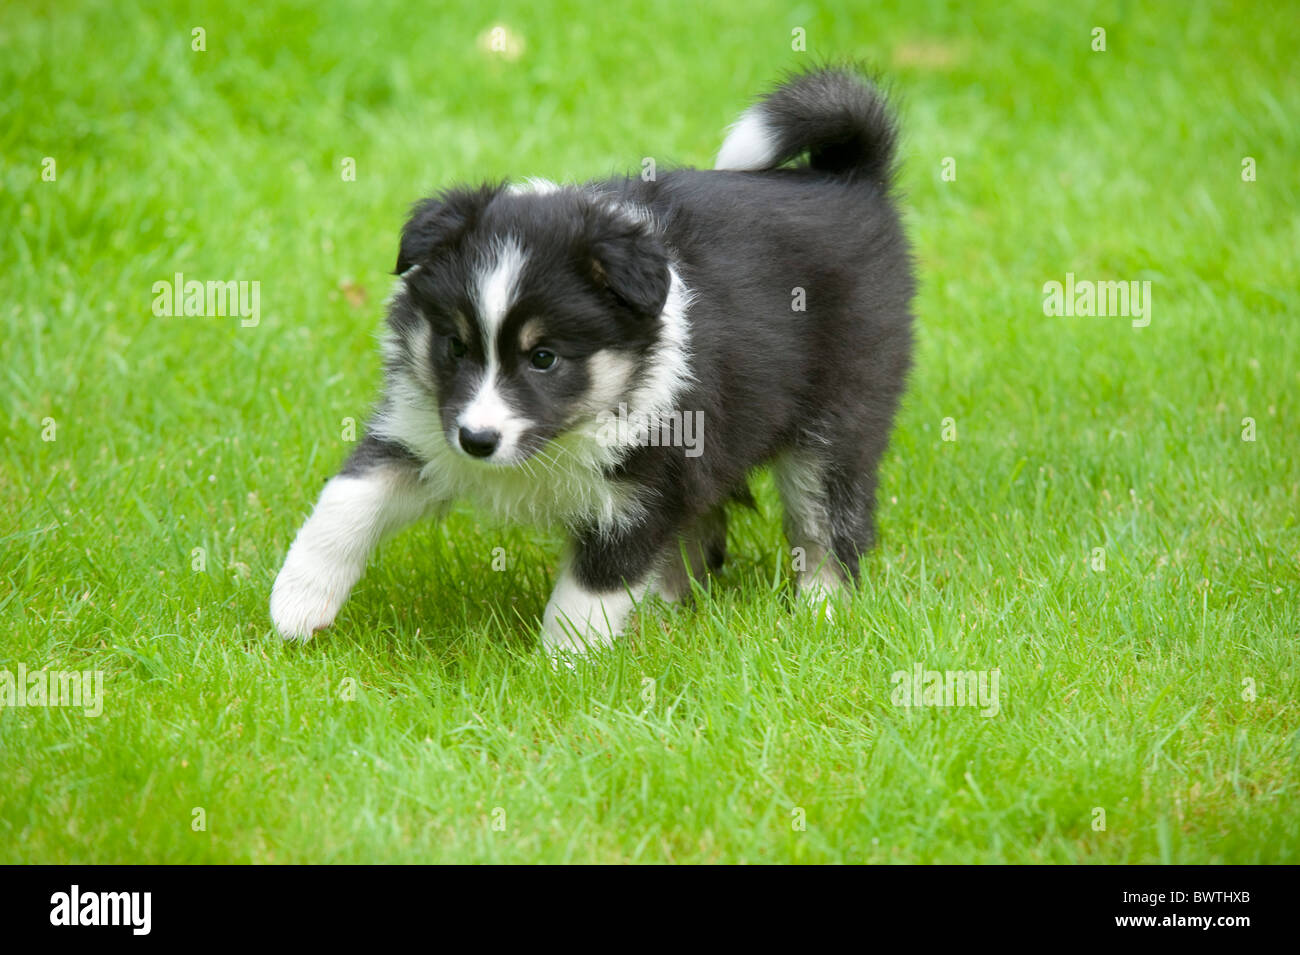 Border Collie Dog Puppy in garden UK Stock Photo